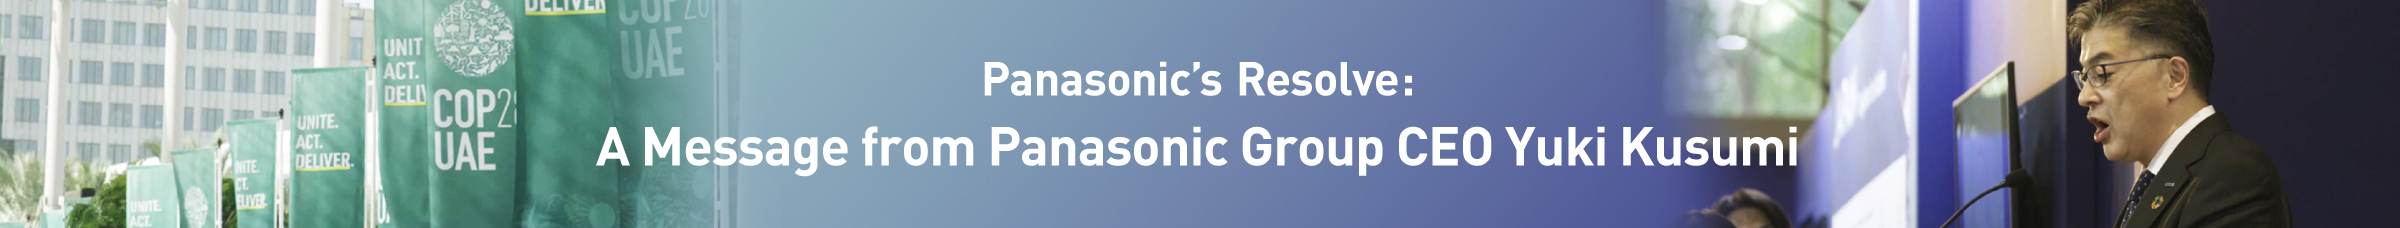 Group CEO Yuki Kusumi sharing Panasonic’s resolve